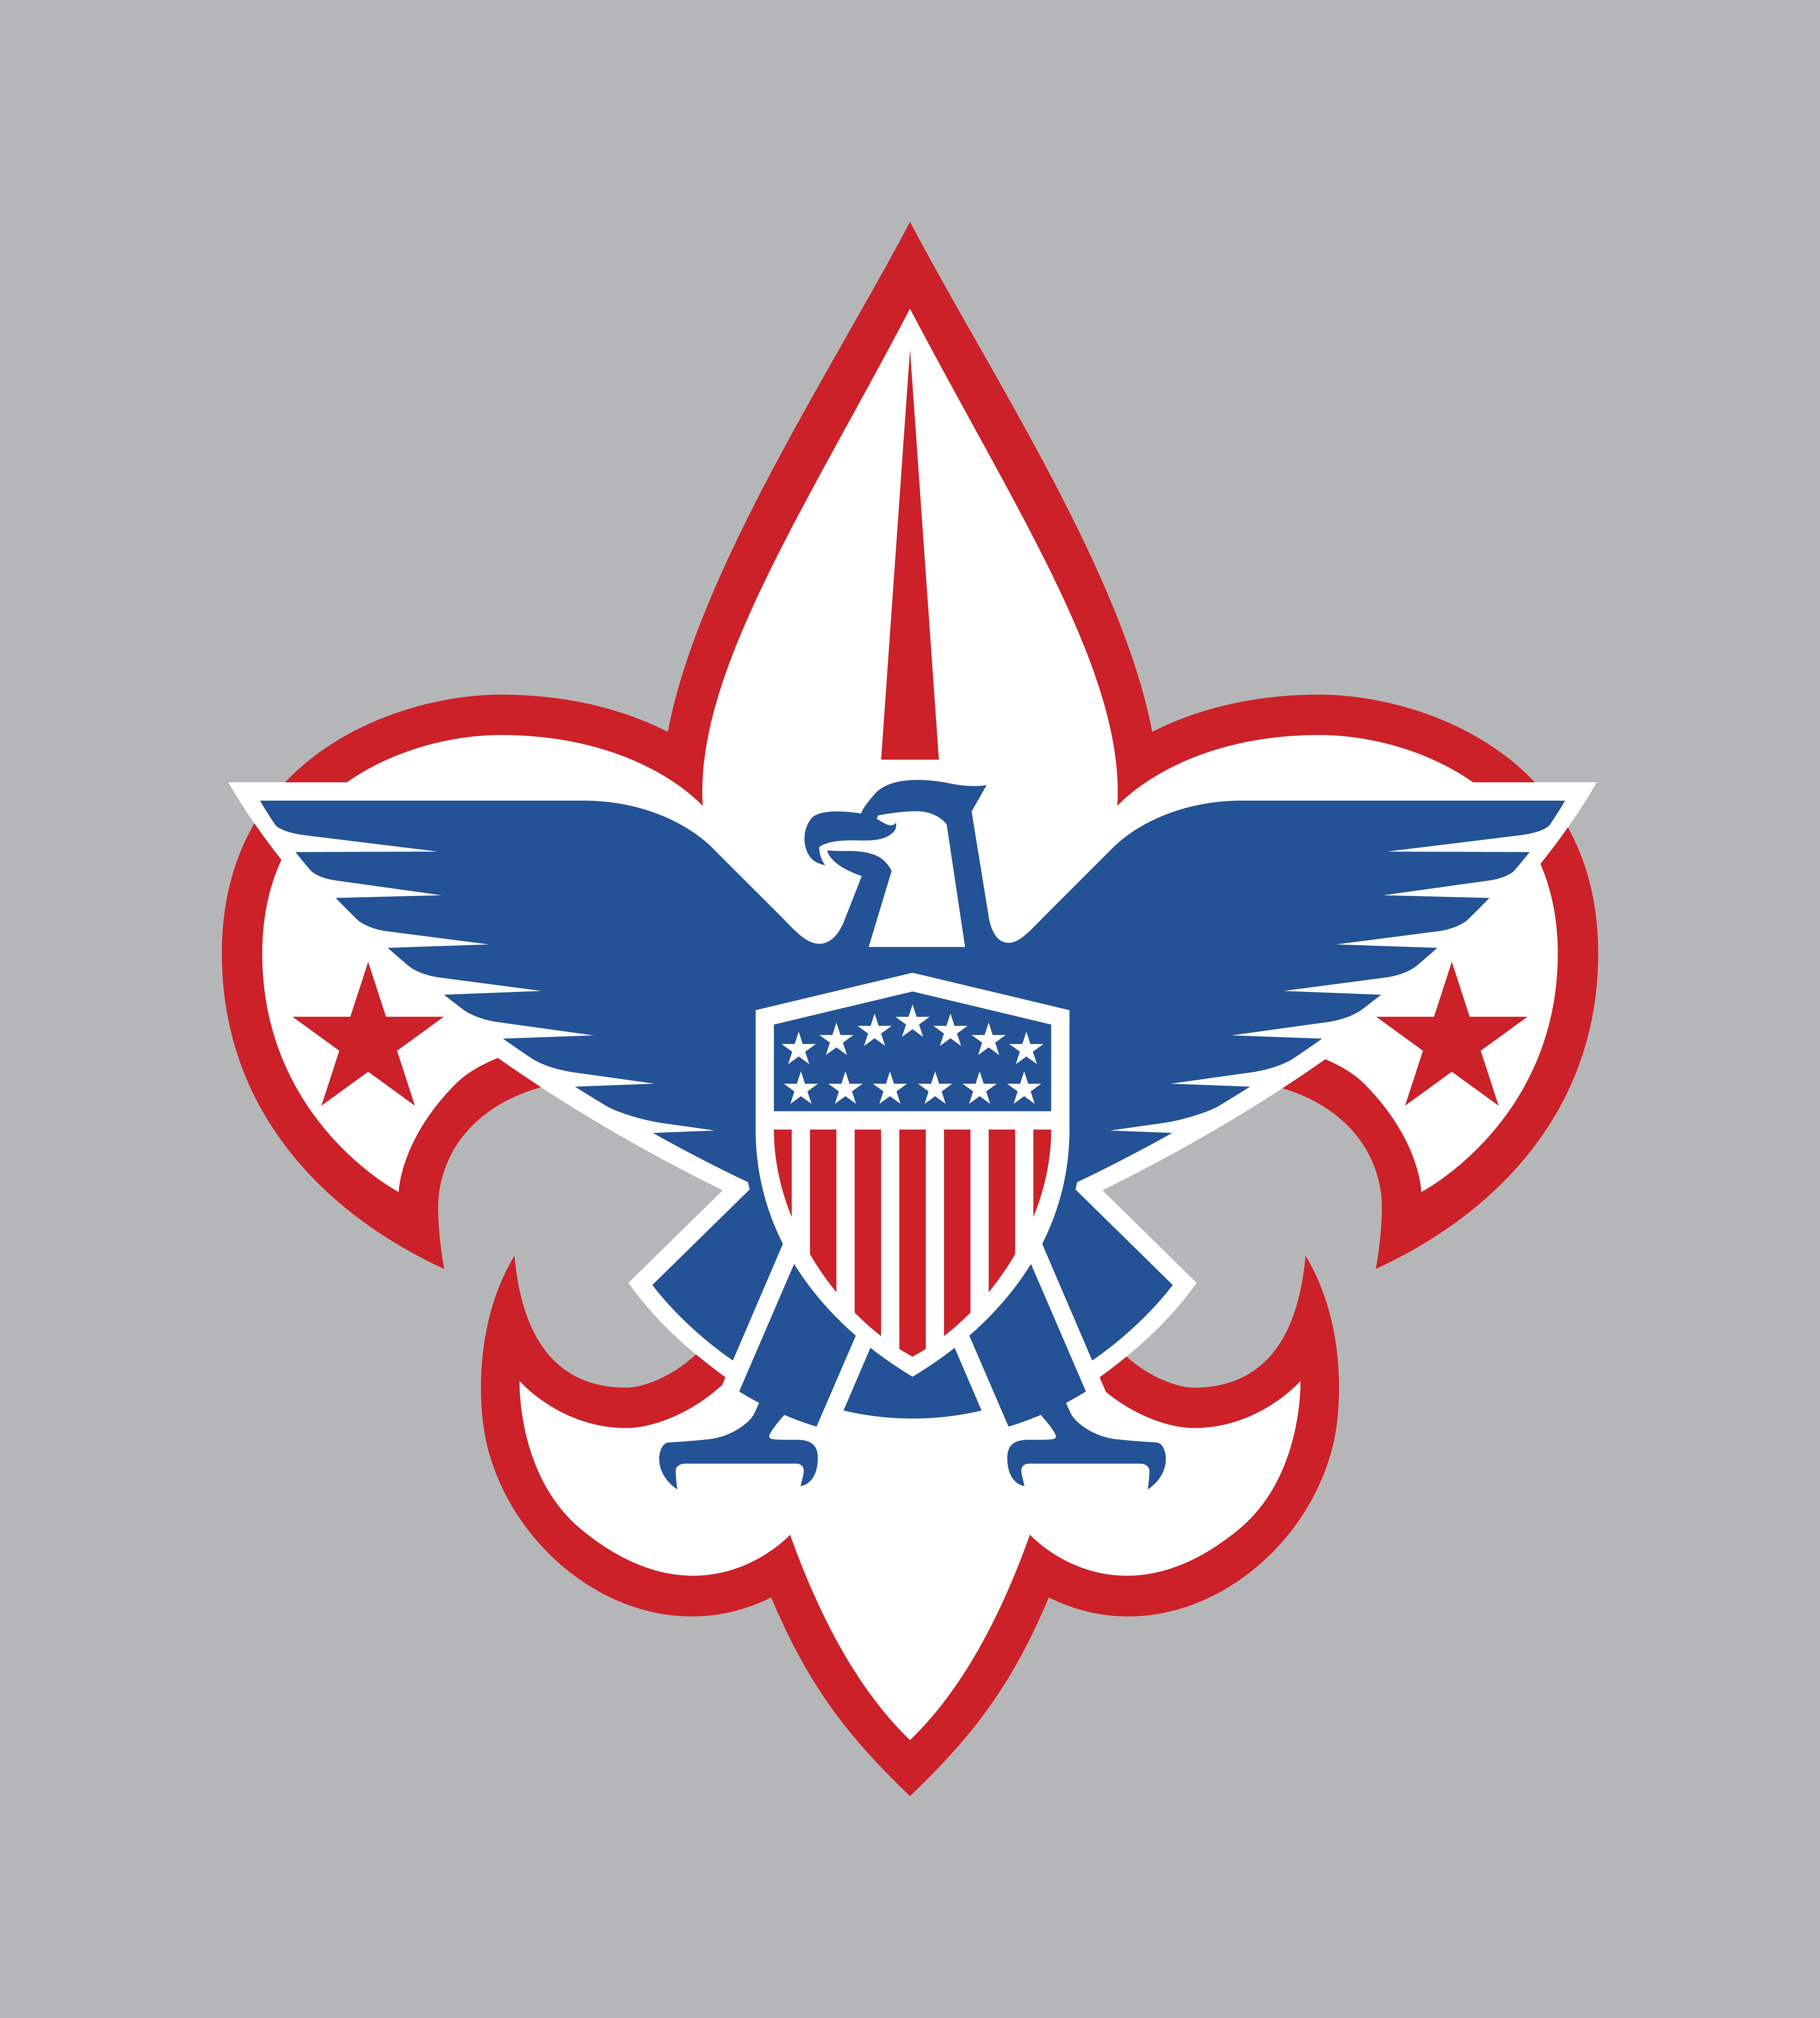 World Scout Emblem - Wikipedia